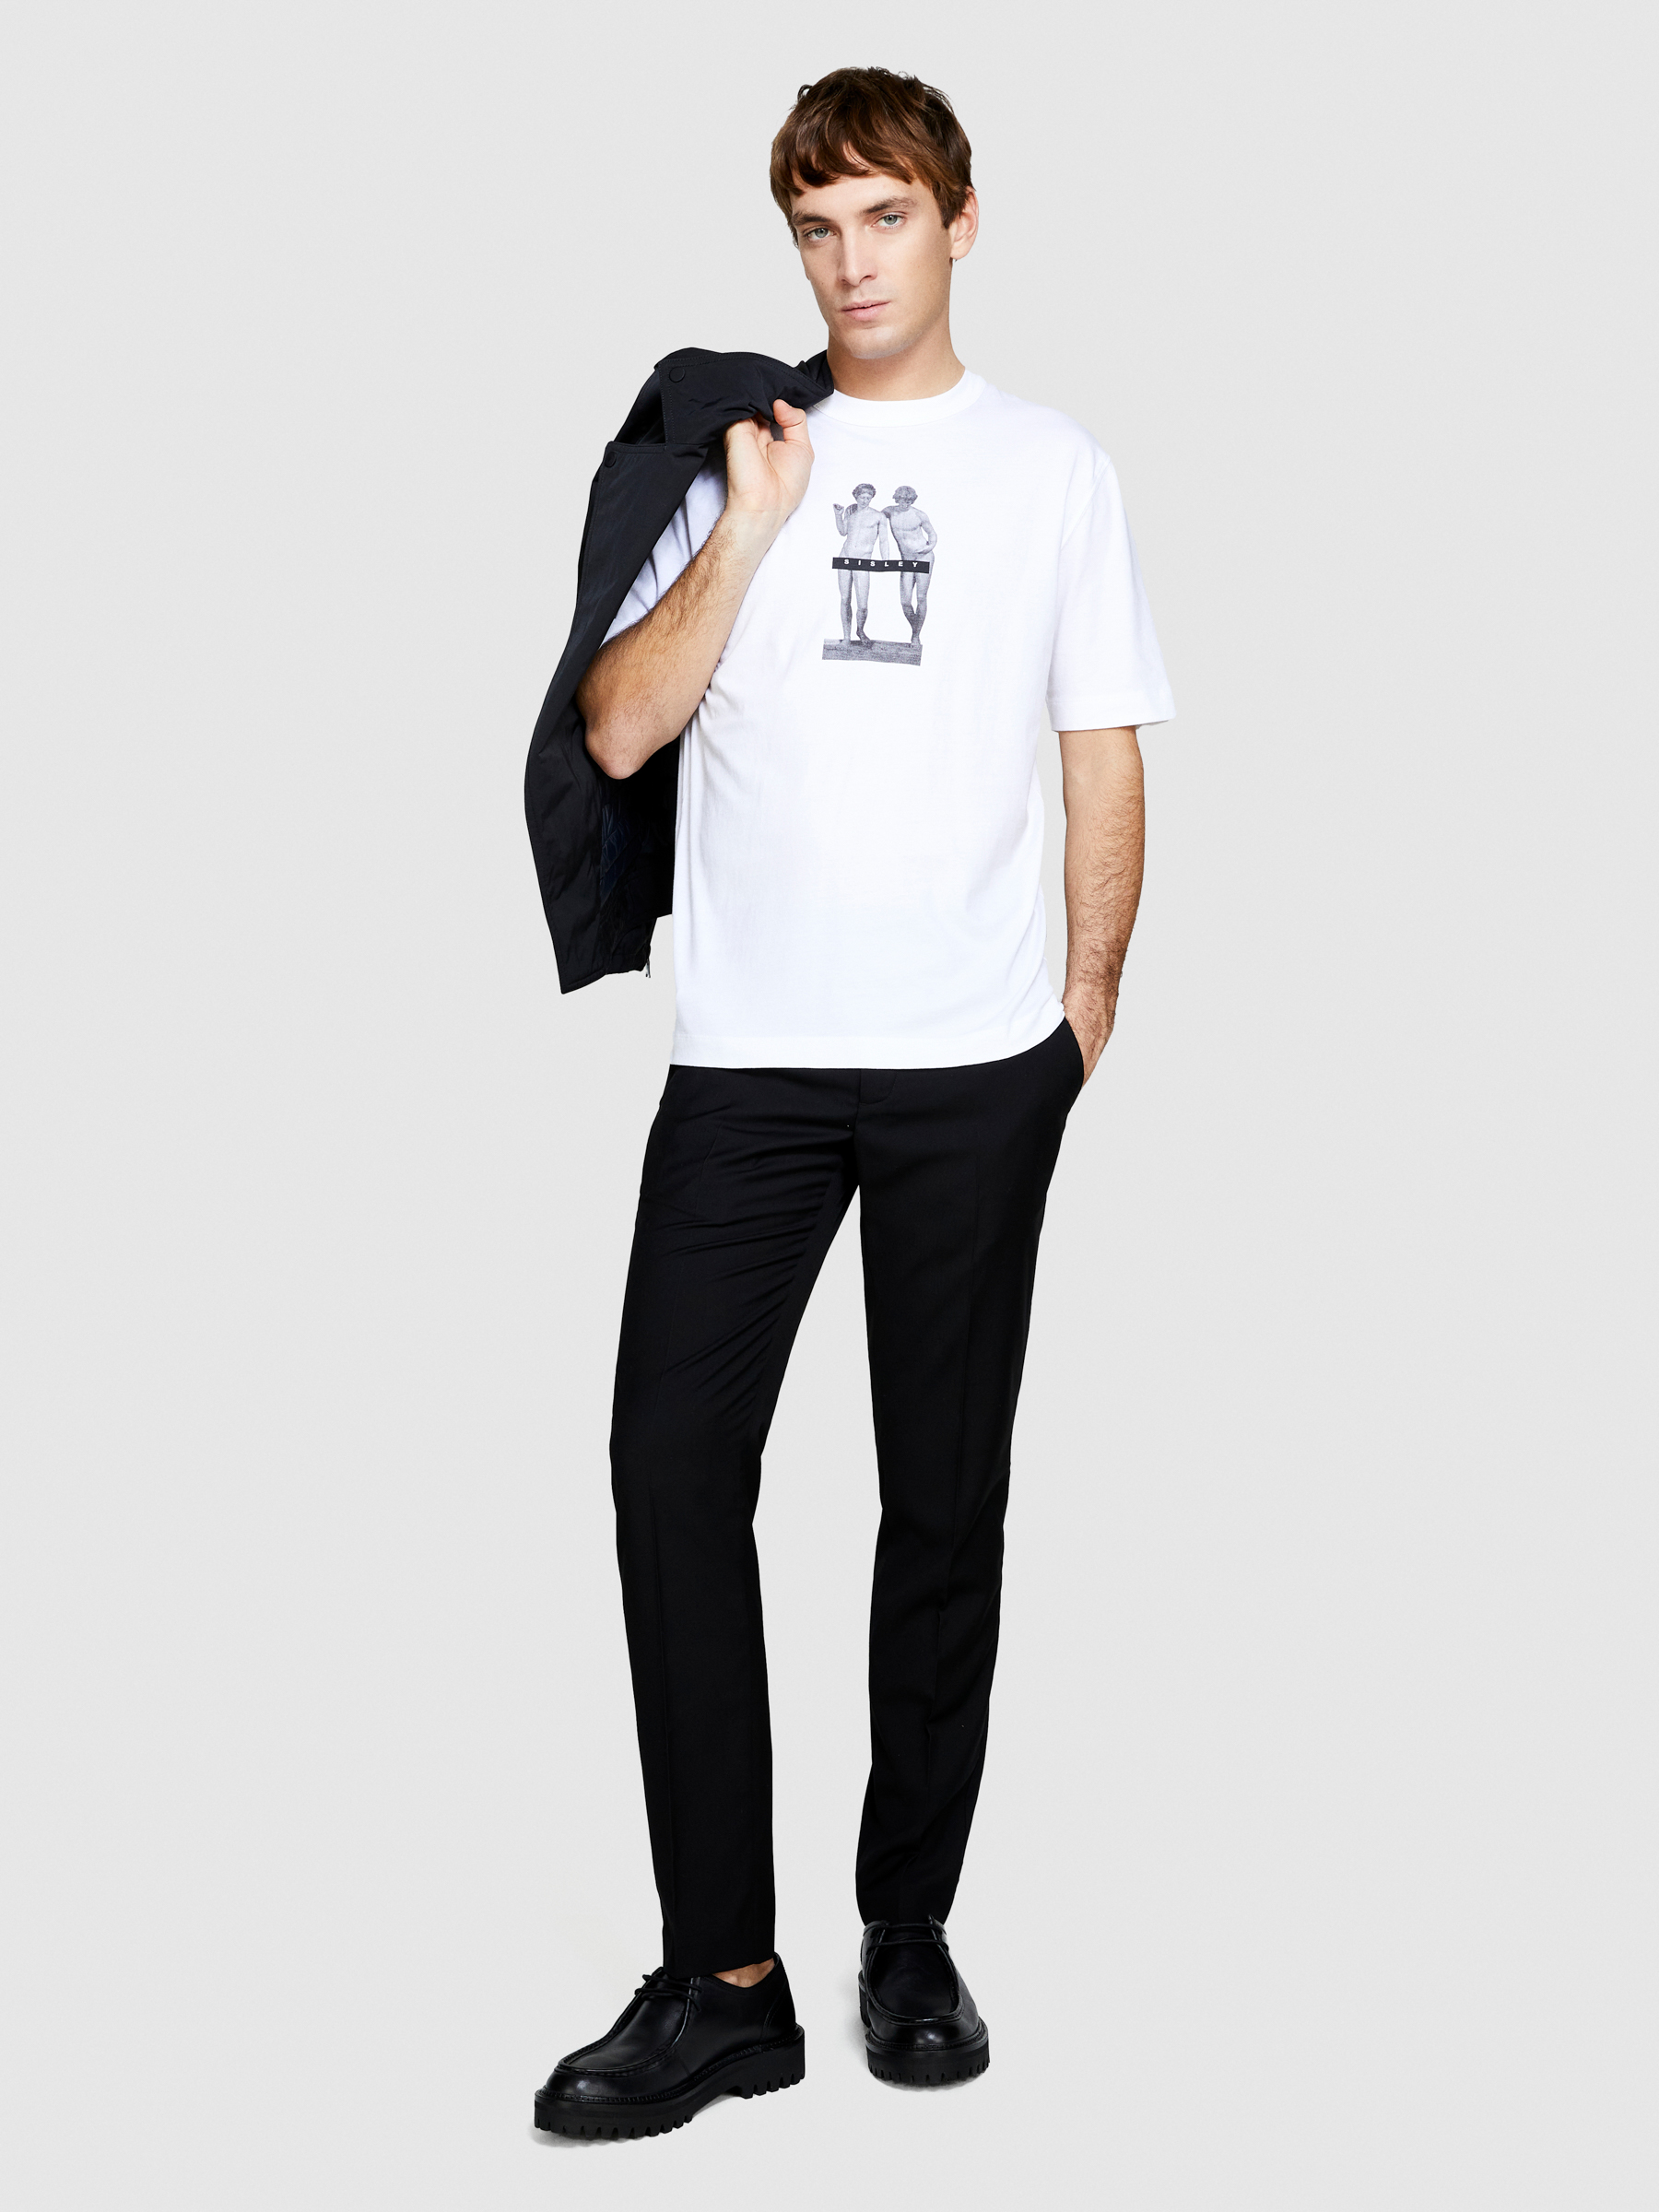 Sisley - T-shirt With Print, Man, White, Size: L